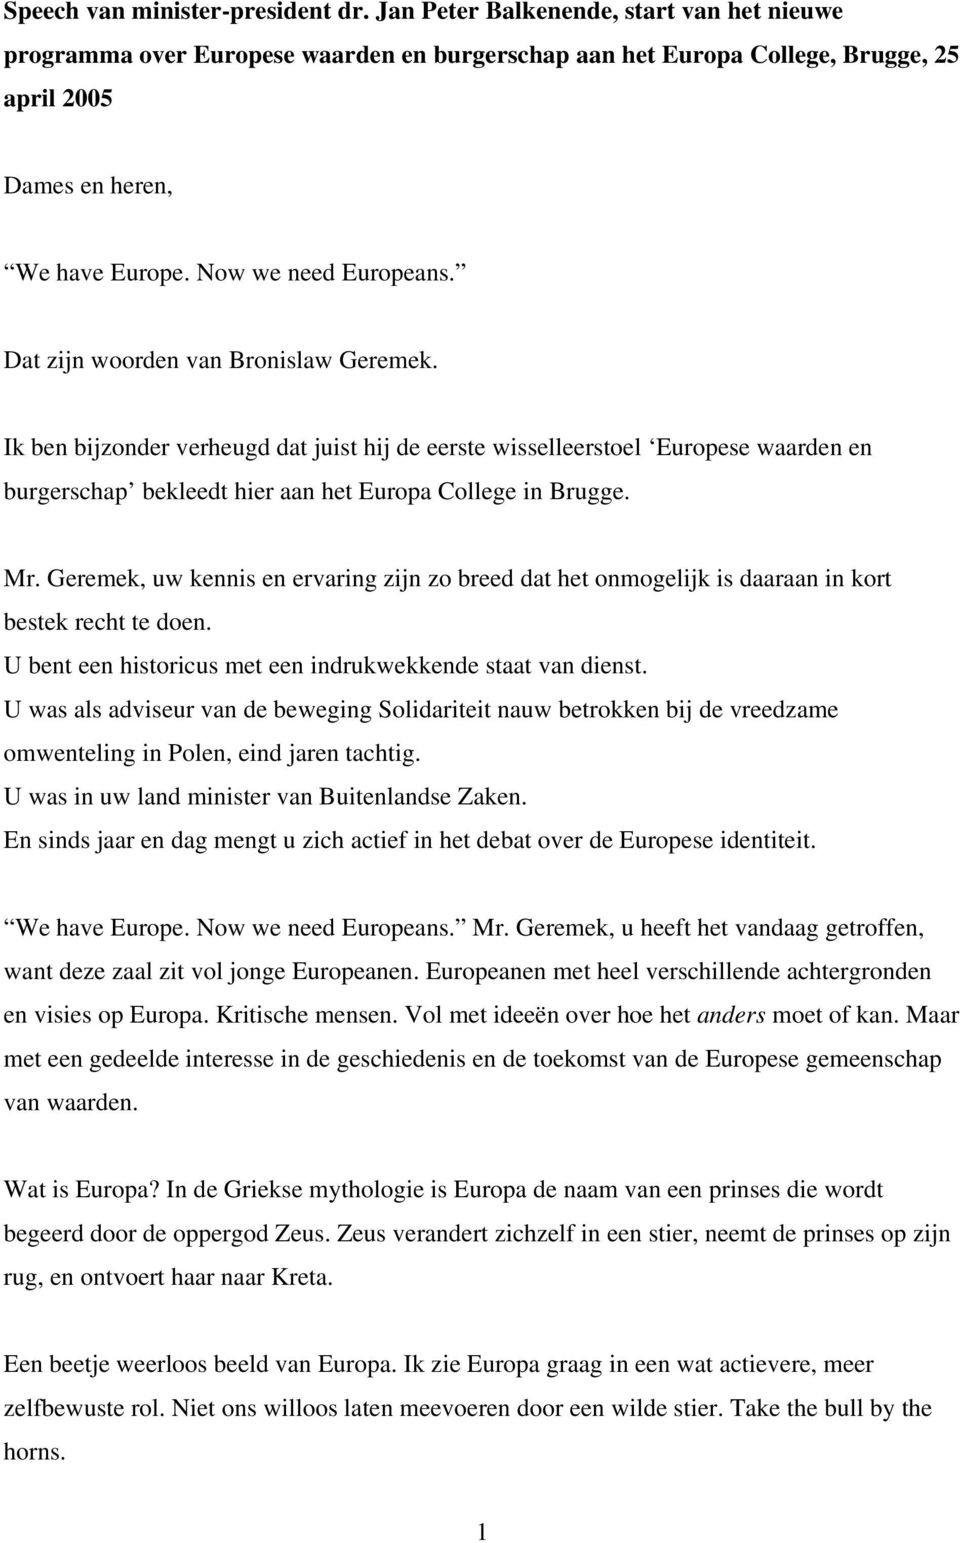 Dat zijn woorden van Bronislaw Geremek. Ik ben bijzonder verheugd dat juist hij de eerste wisselleerstoel Europese waarden en burgerschap bekleedt hier aan het Europa College in Brugge. Mr.